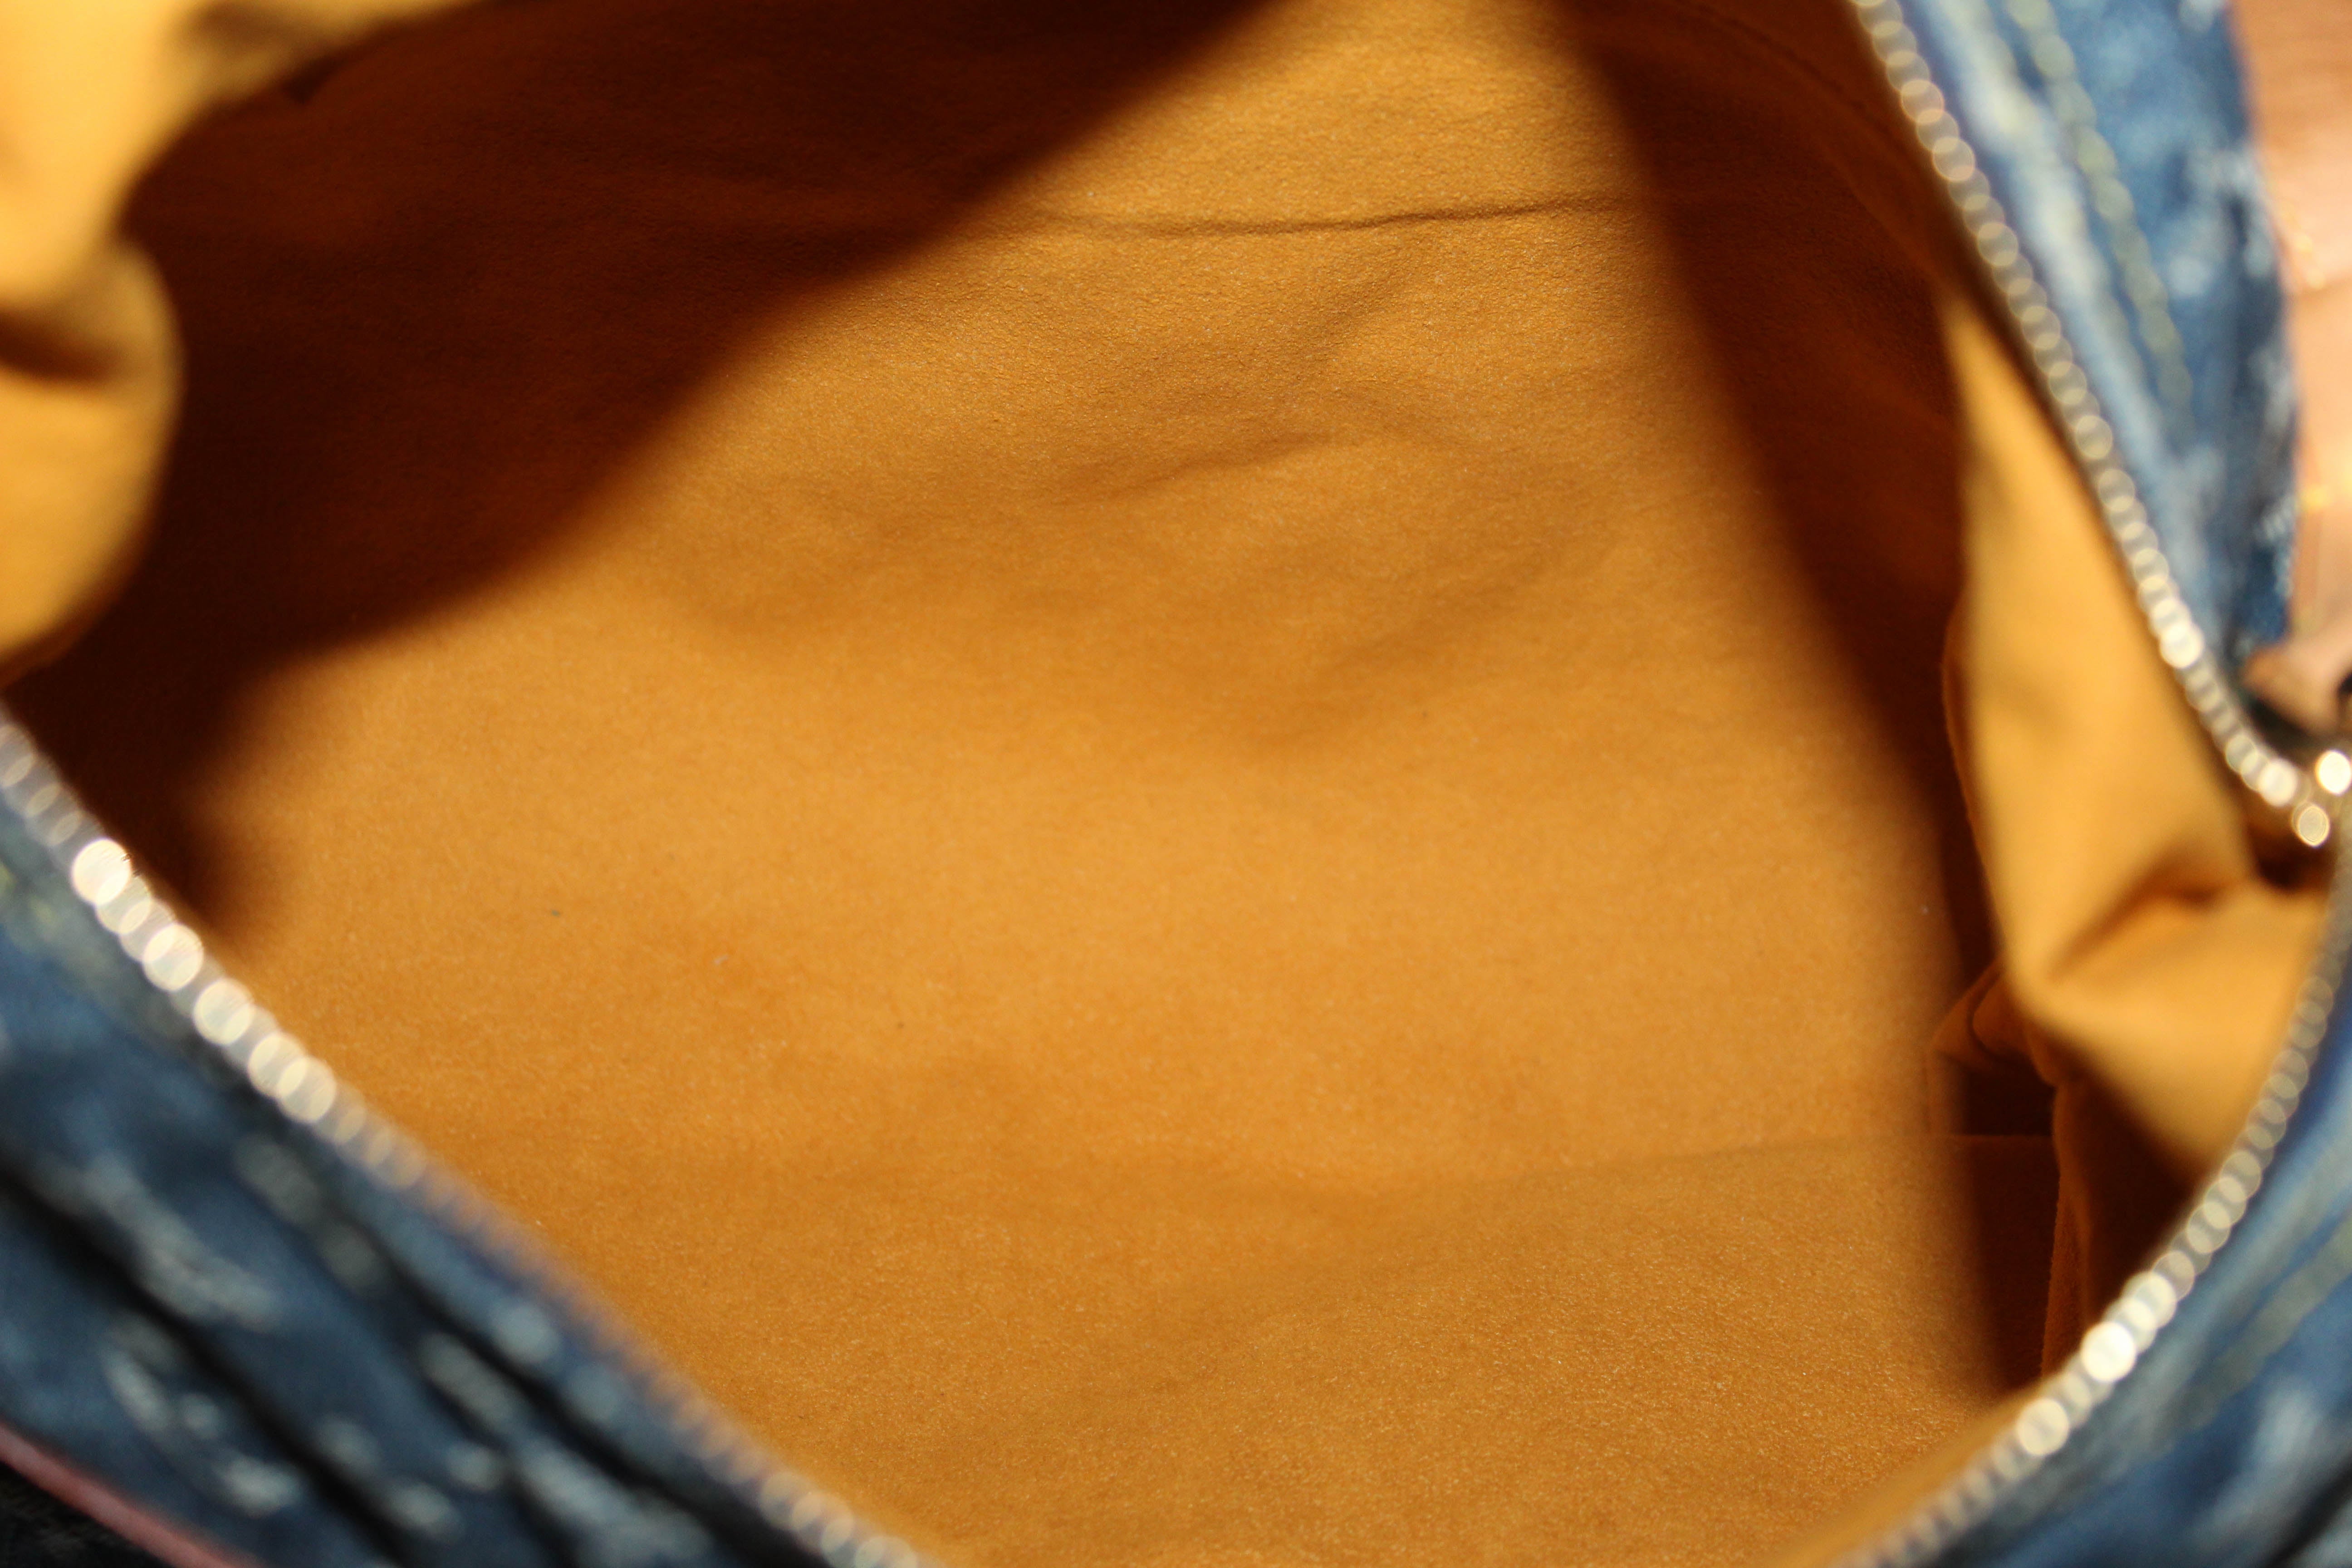 Authentic Louis Vuitton Blue Denim Monogram Baggy GM Shoulder Bag